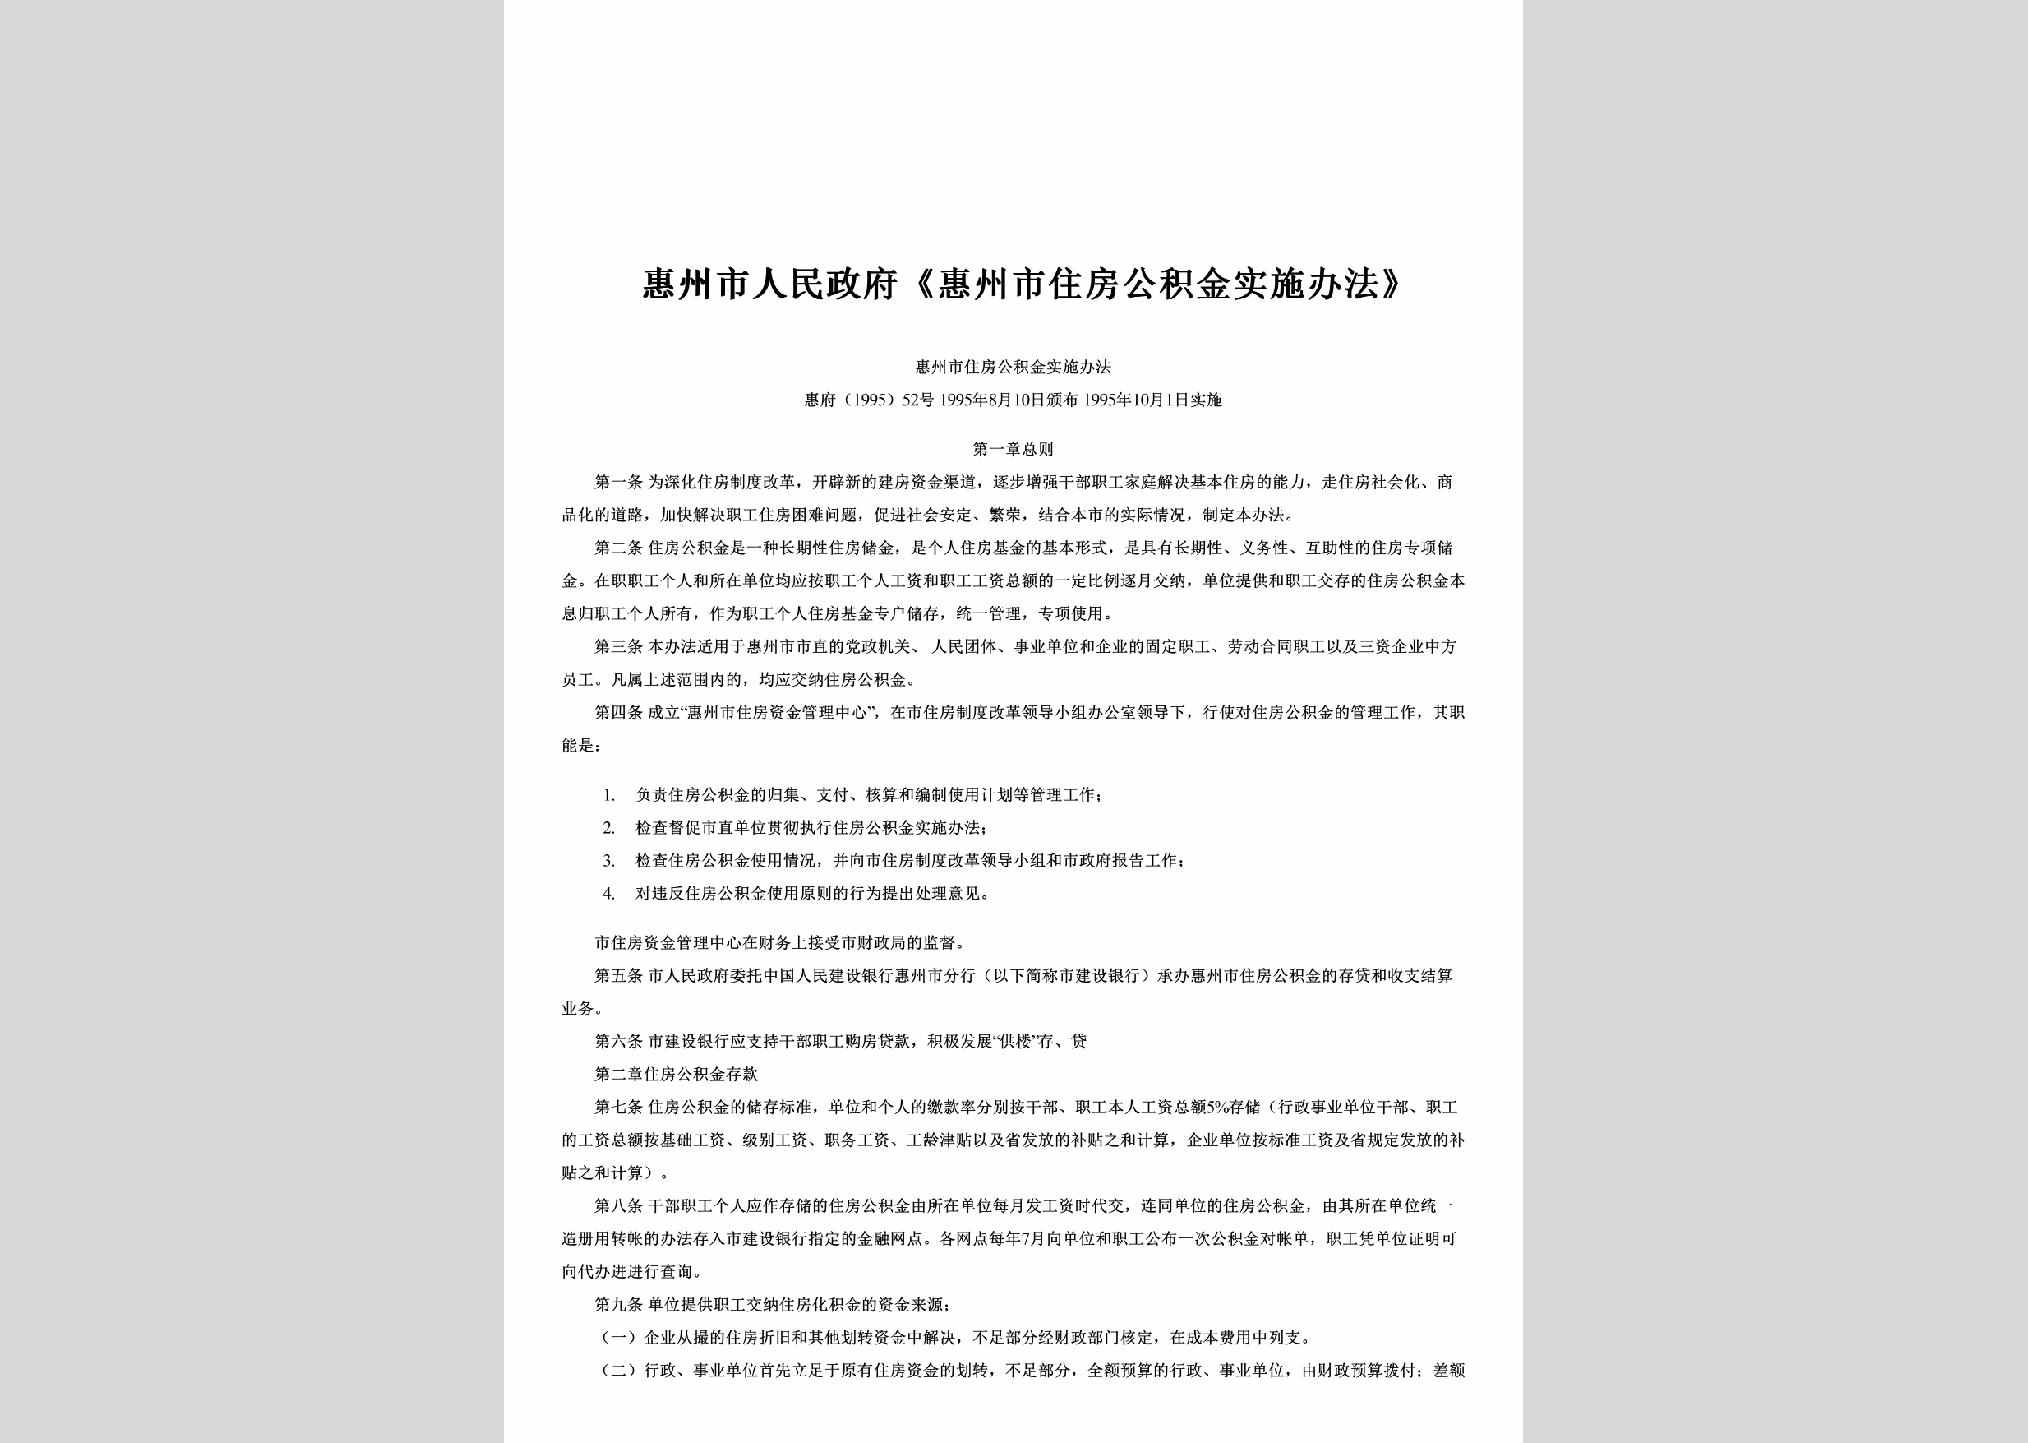 惠府[1995]52号：《惠州市住房公积金实施办法》